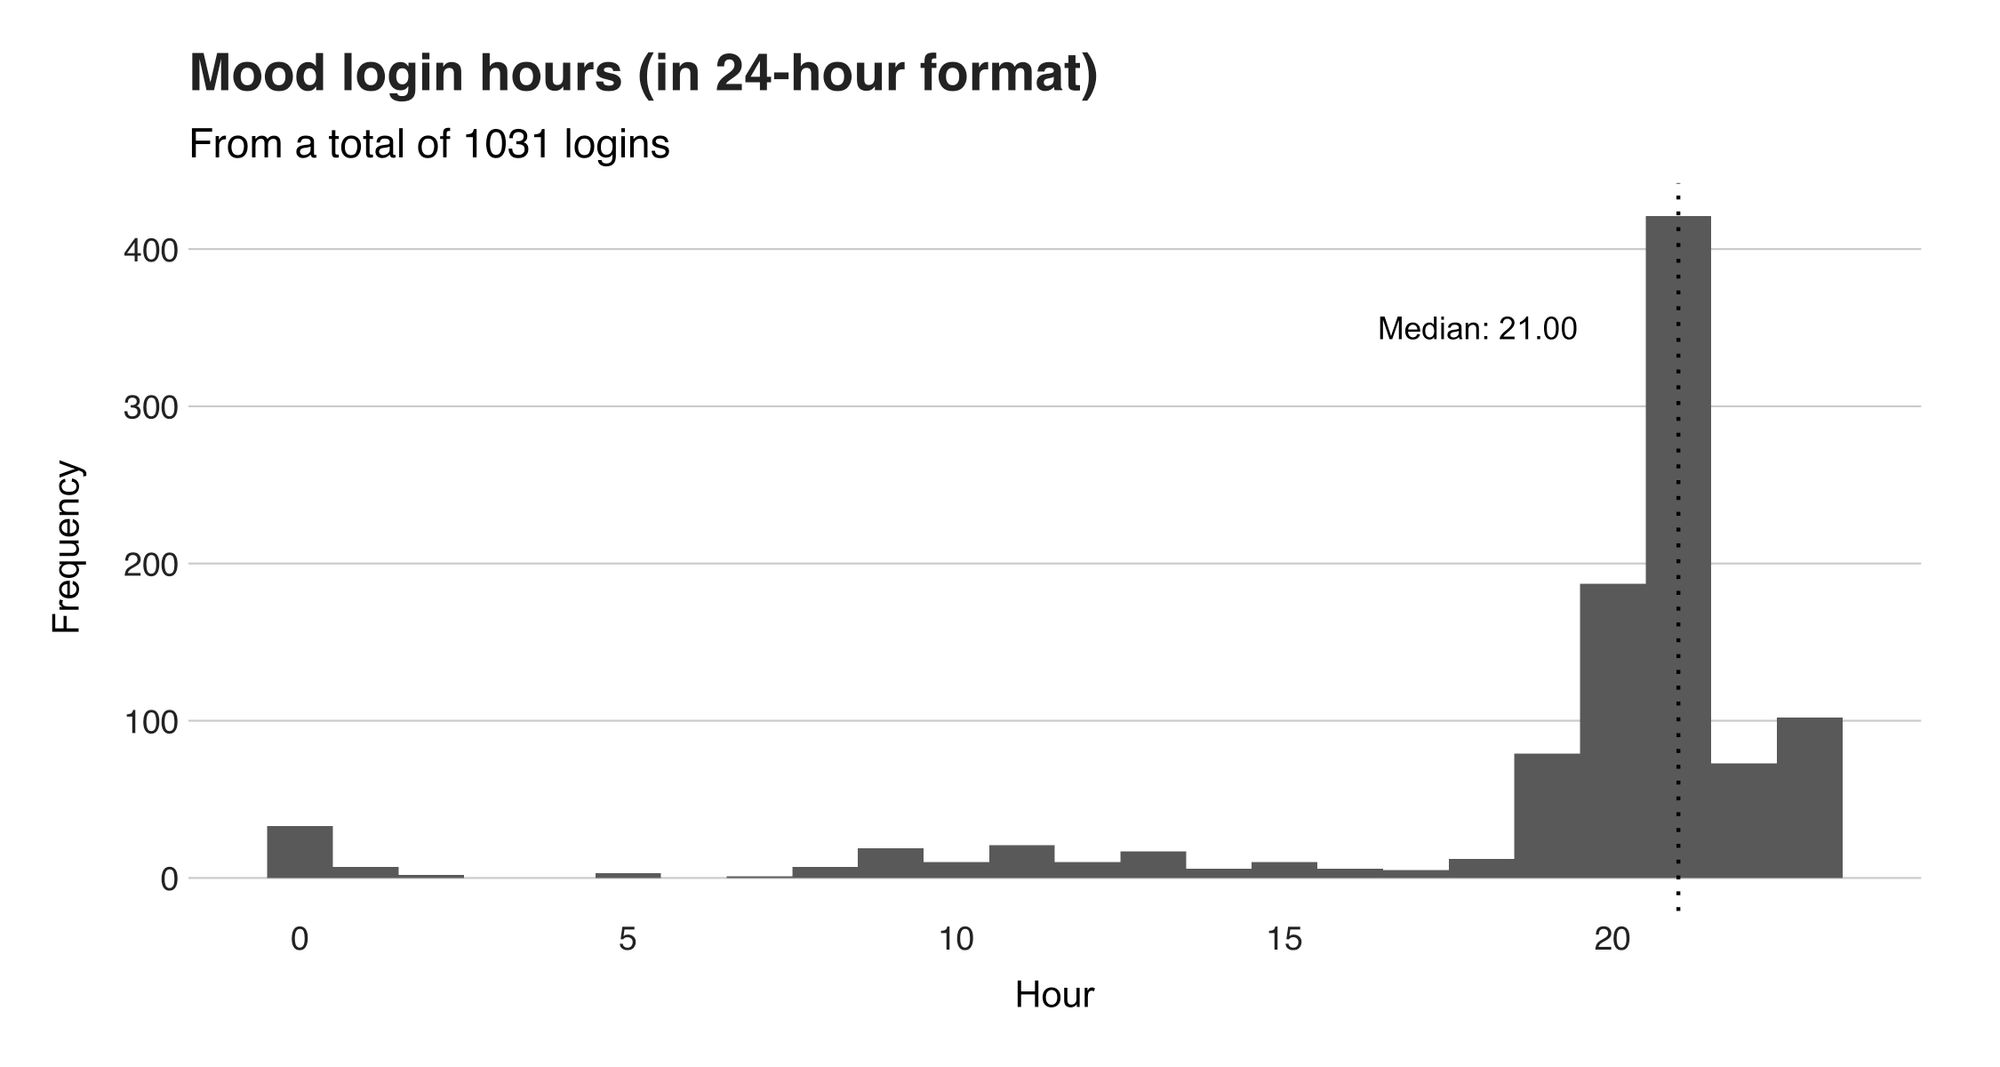 Figure 2. Mood login hours, including the median.